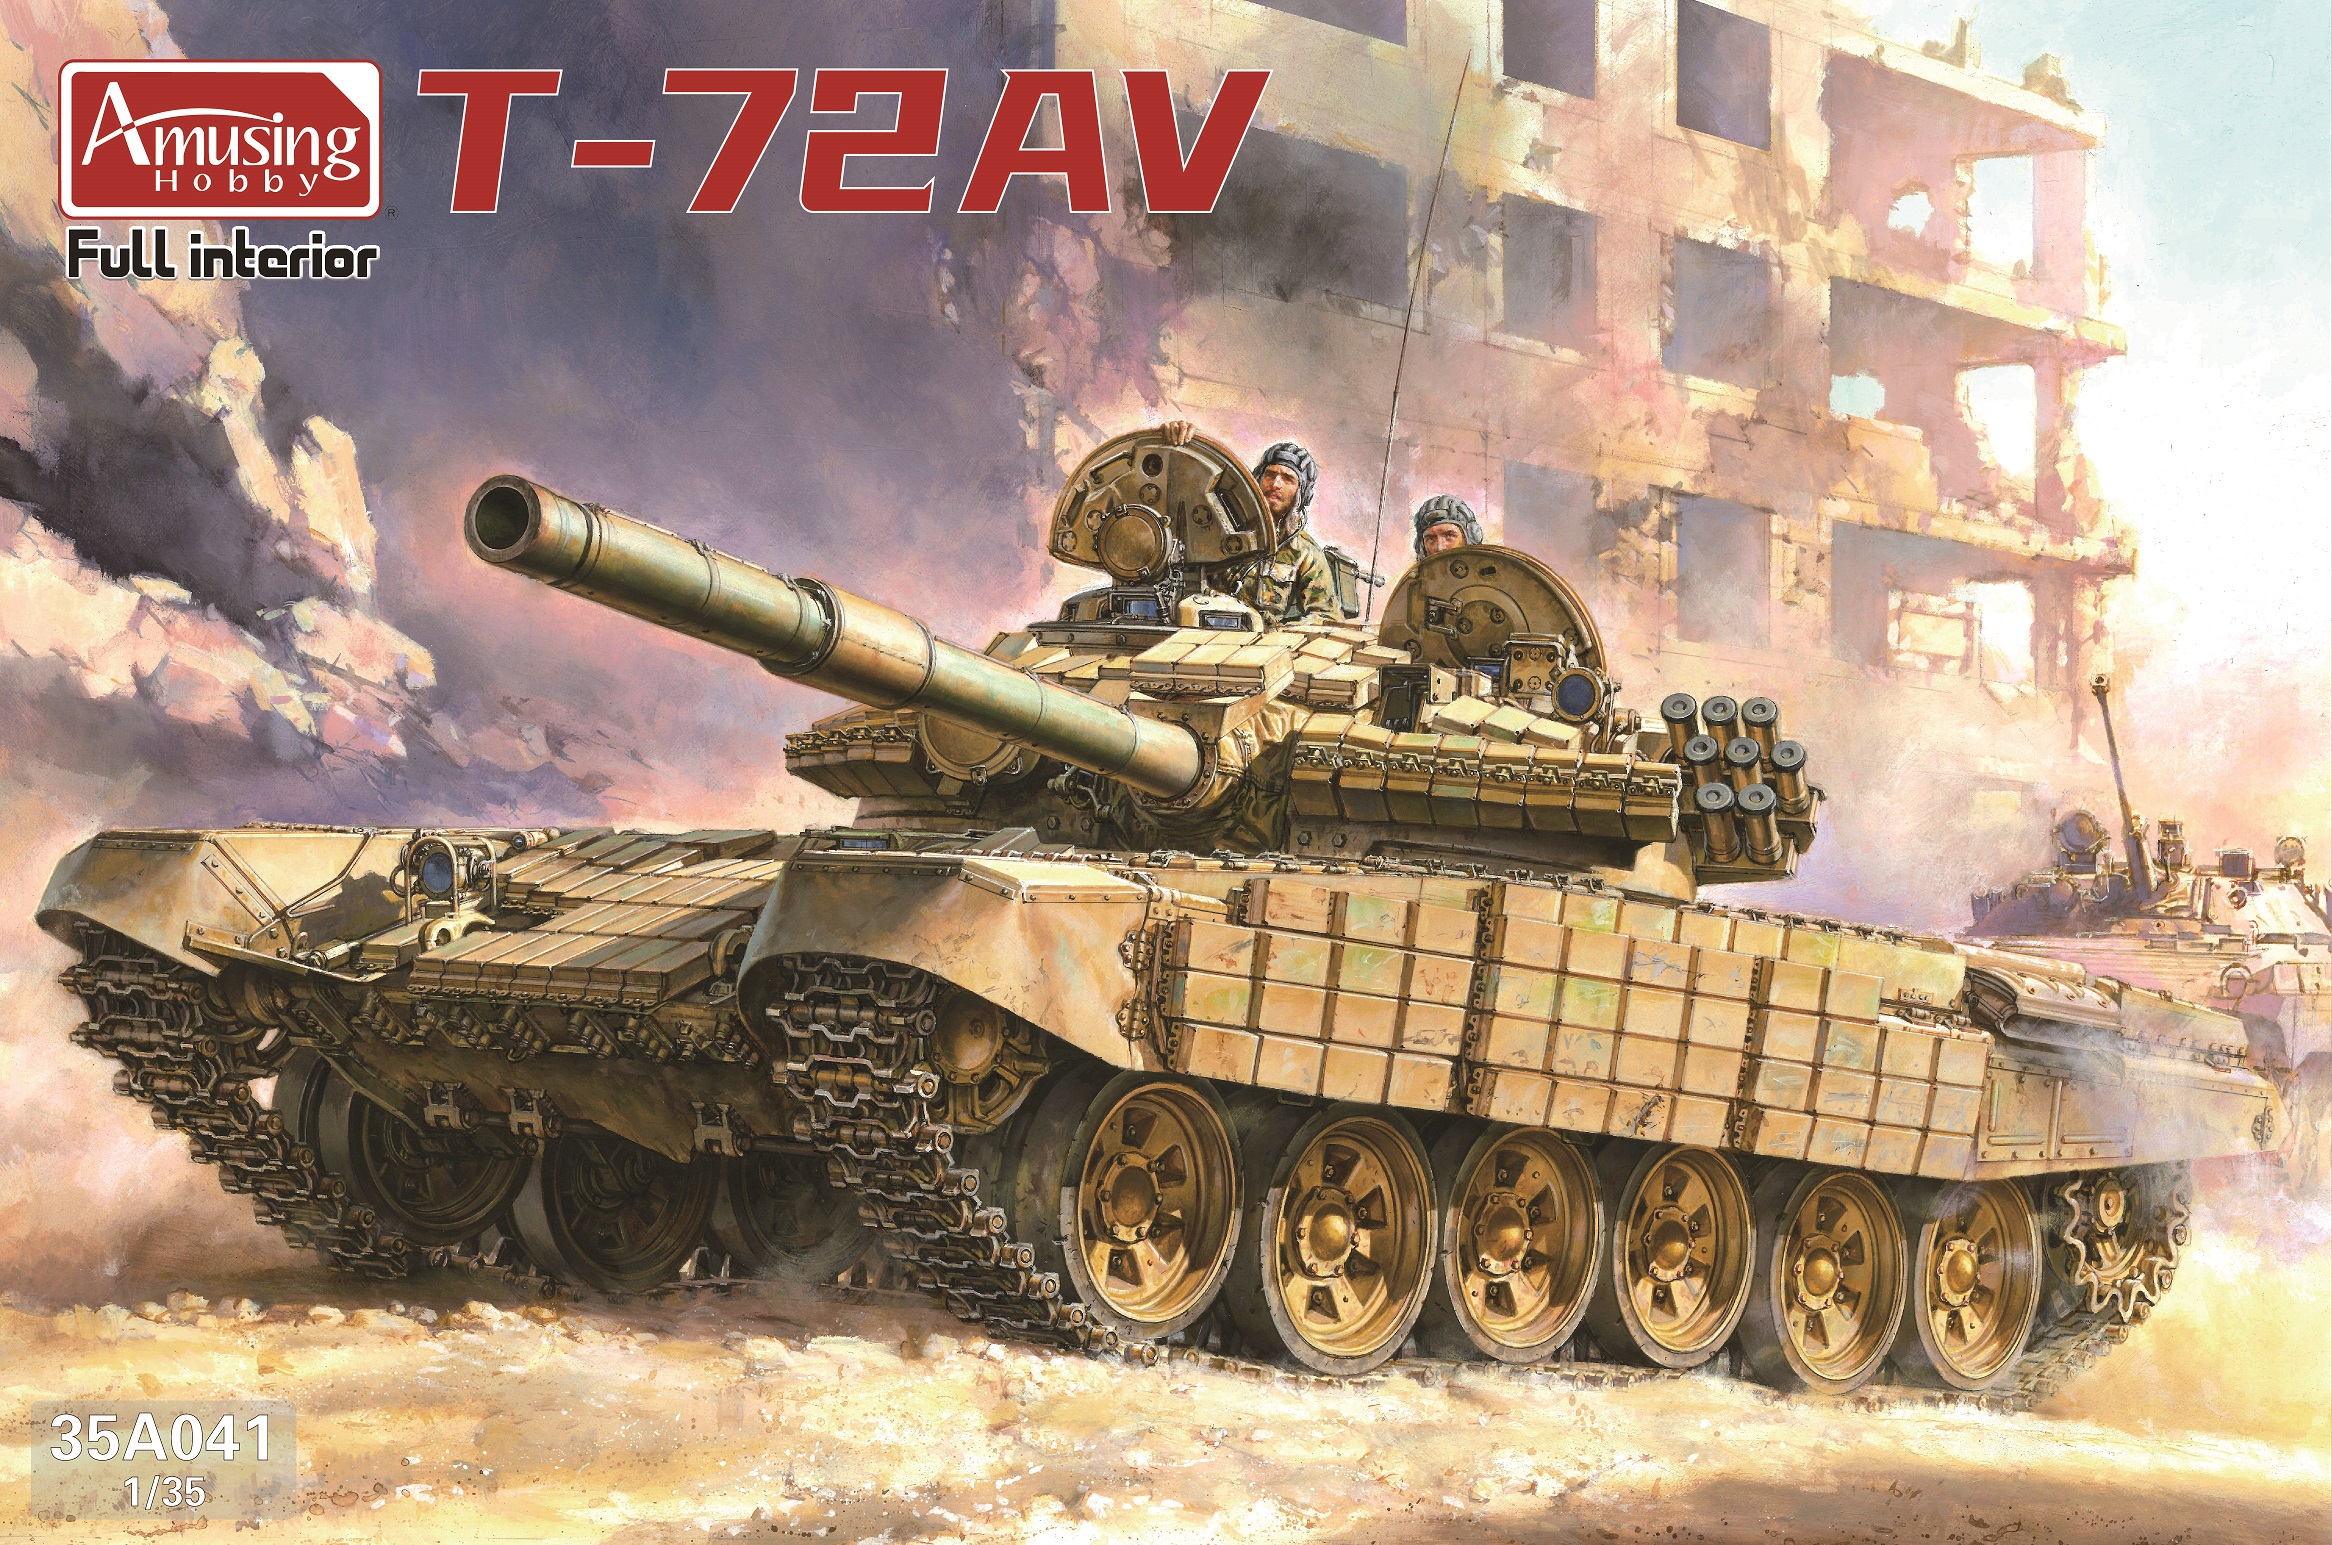 T 72 Av Ah35a041